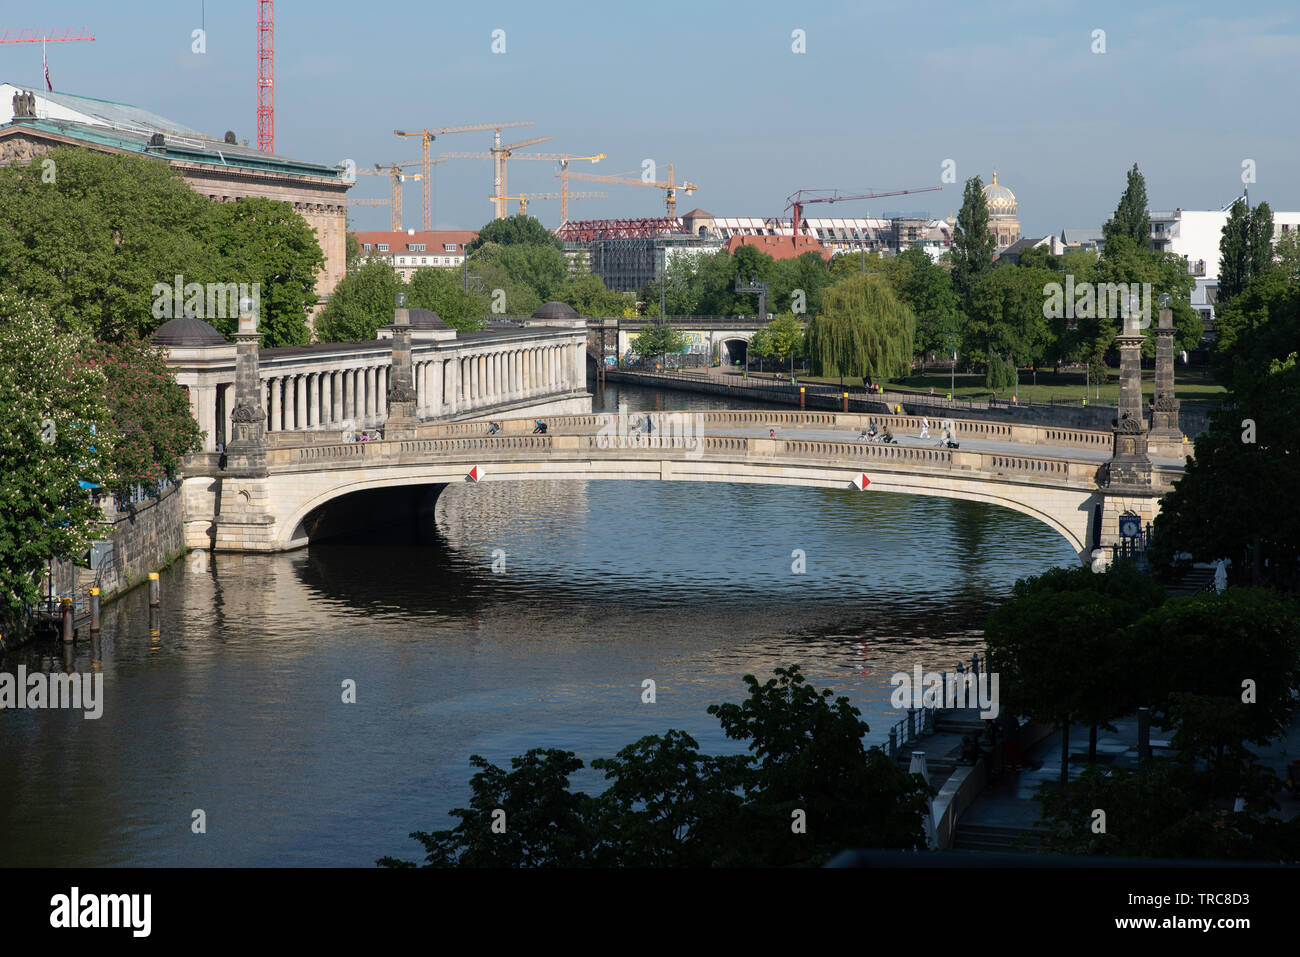 Friedrichbrücke sur la rivière Spree menant à l'île des musées, Berlin, Allemagne. Banque D'Images